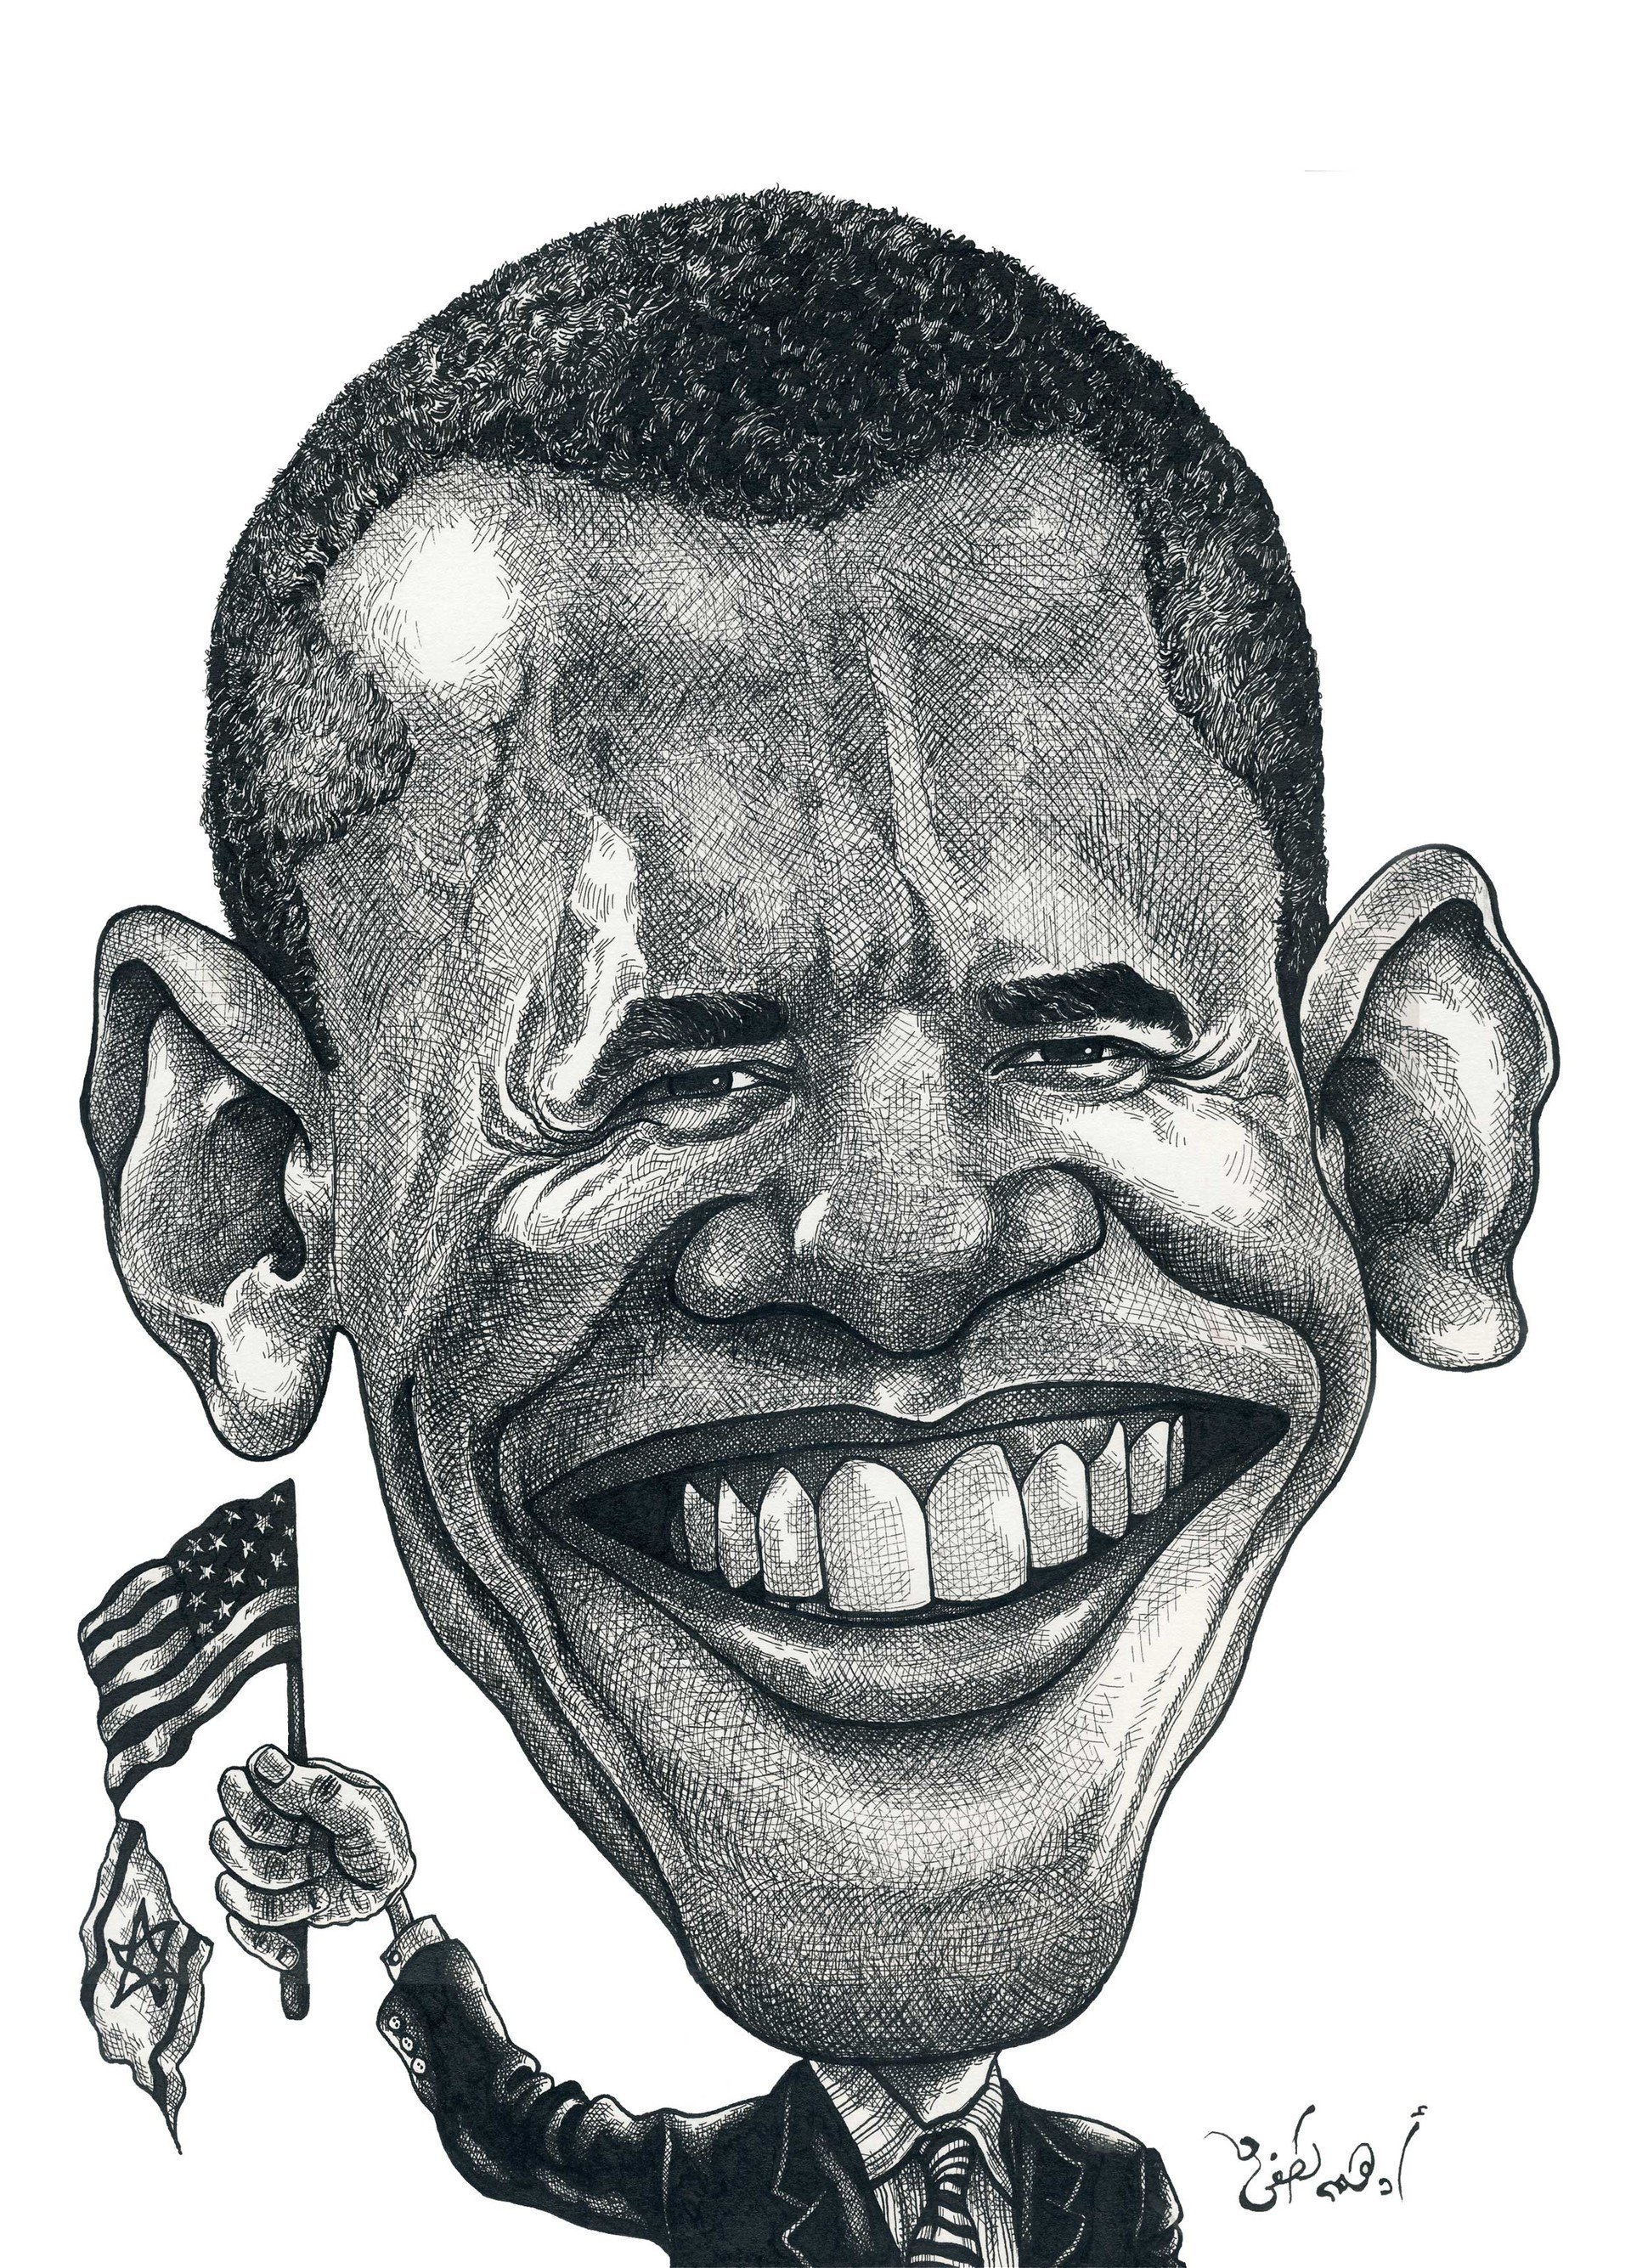 Сатирический образ человека шарж. Сатирический образ человека Обама. Сатирический образ Барак Обама. Барак Обама сатирический портрет. Карикатурные портреты Обамы.